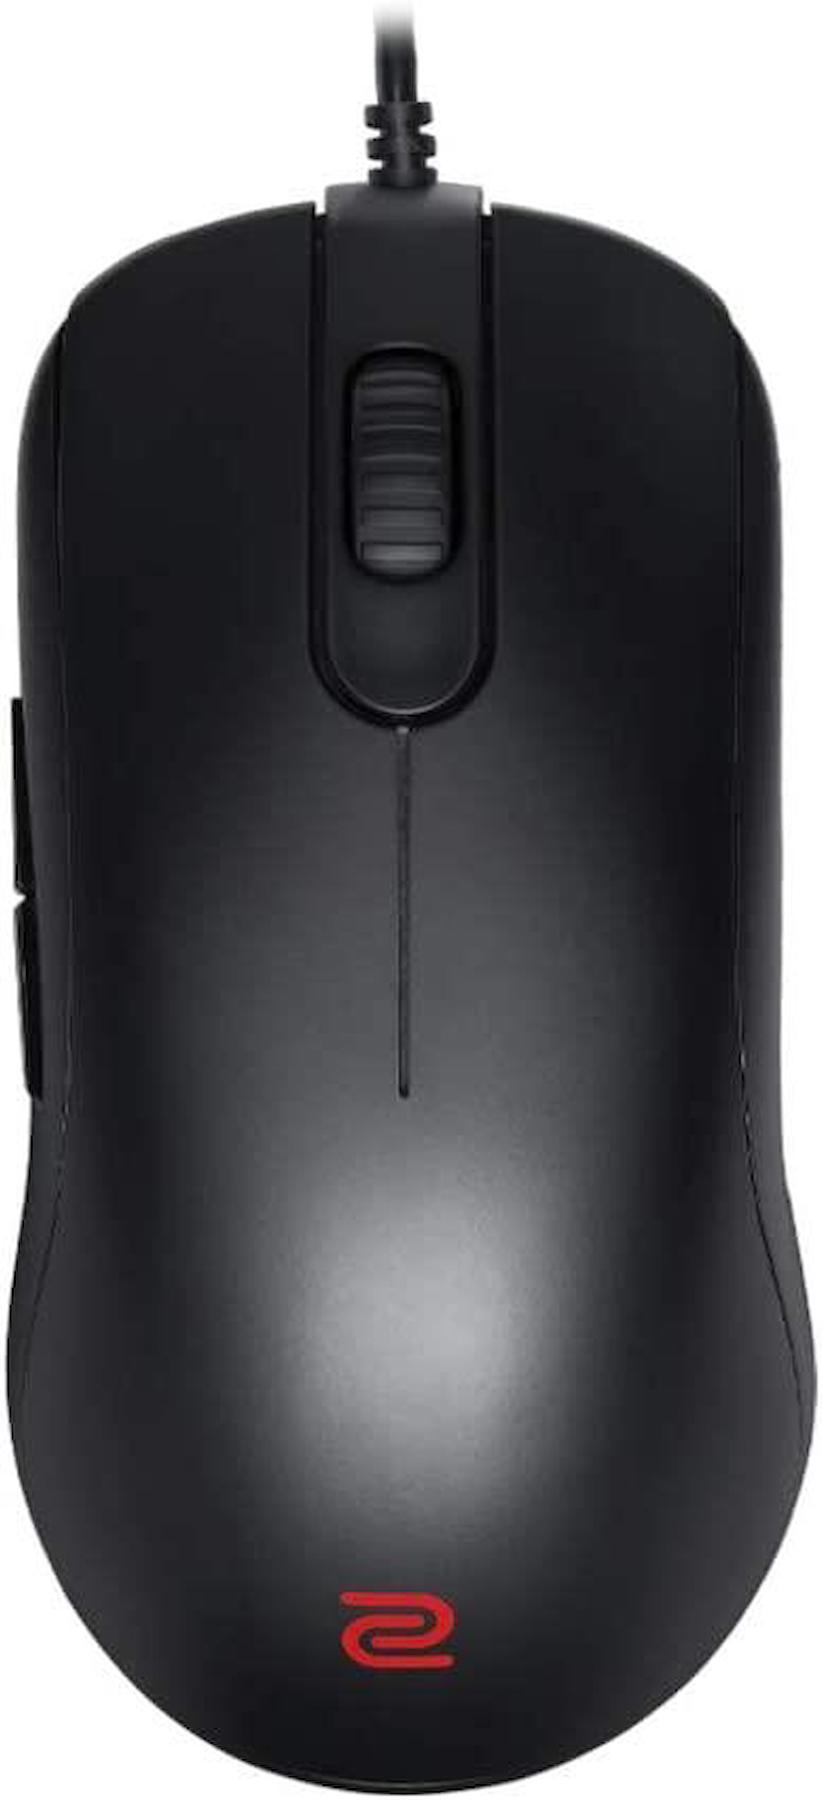 Zowie Fk2-B Kablolu Siyah Gaming Mouse